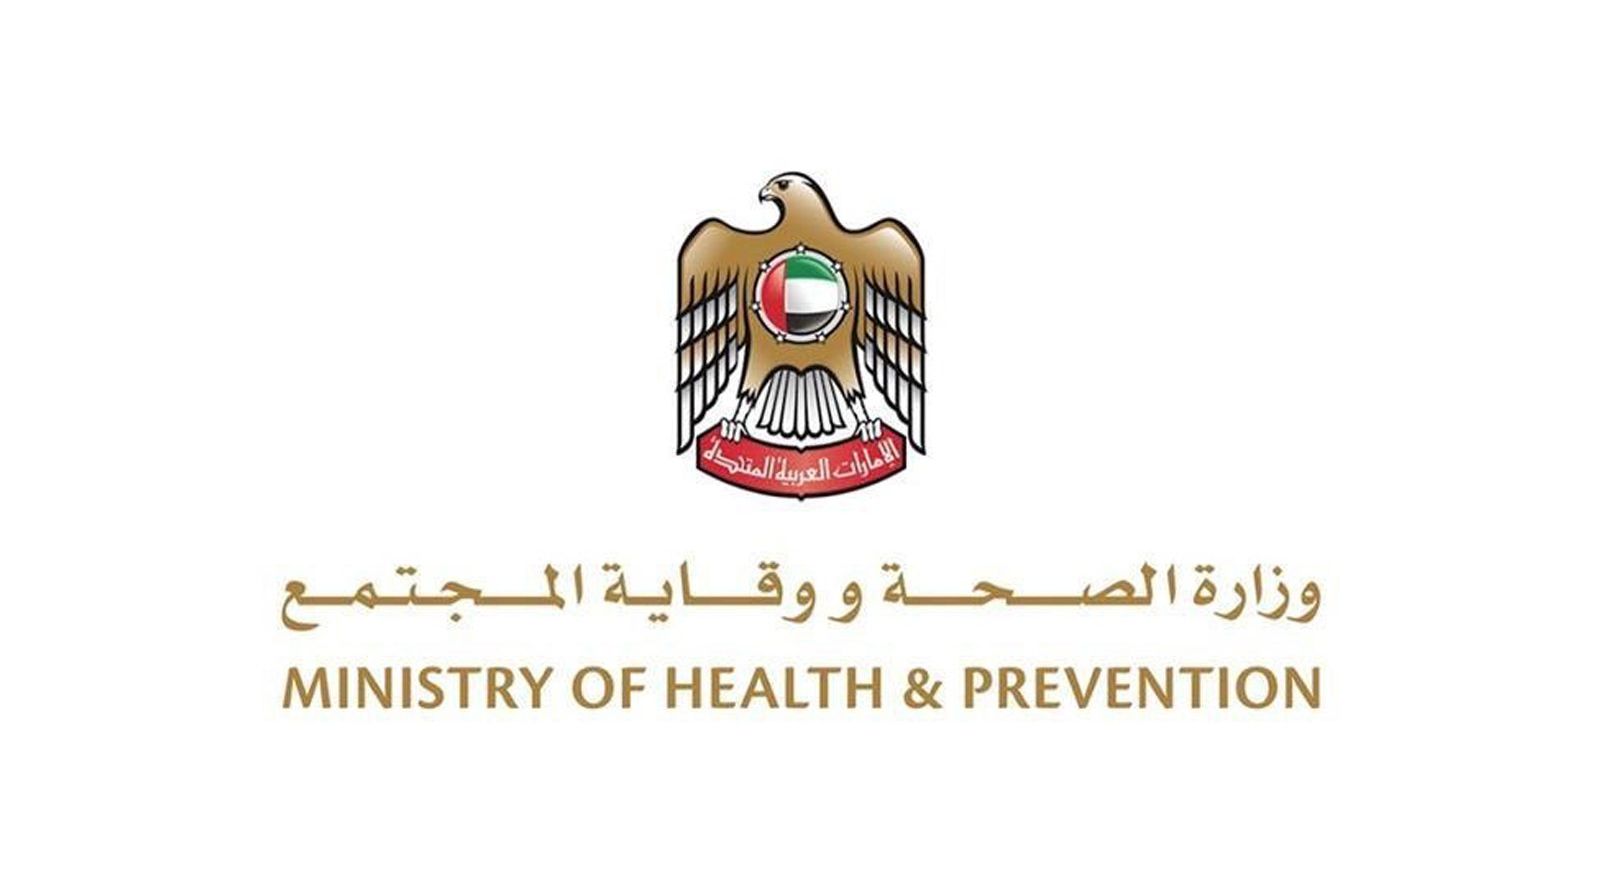 الوزارة تعلن عن قائمة الفئات المستثناة من أخذ اللقاح لضمان سلامة جميع المواطنين والمقيمين